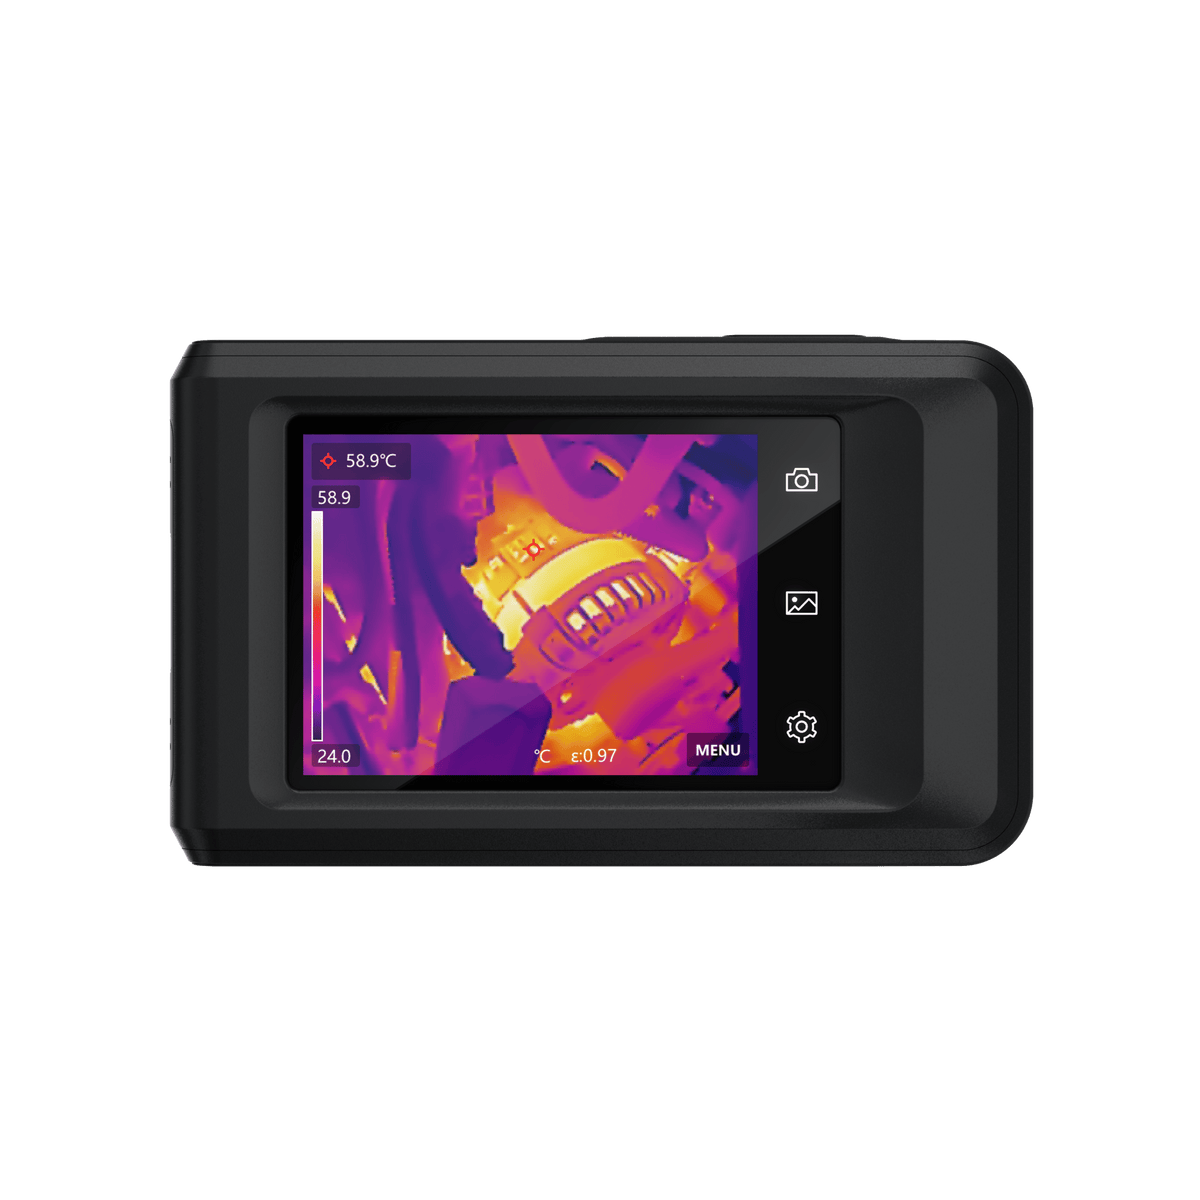 HIKMICRO Pocket2 Wärmebildkamera (256x192 IR Auflösung) 25Hz, MSX Technologie - VolTech GmbH